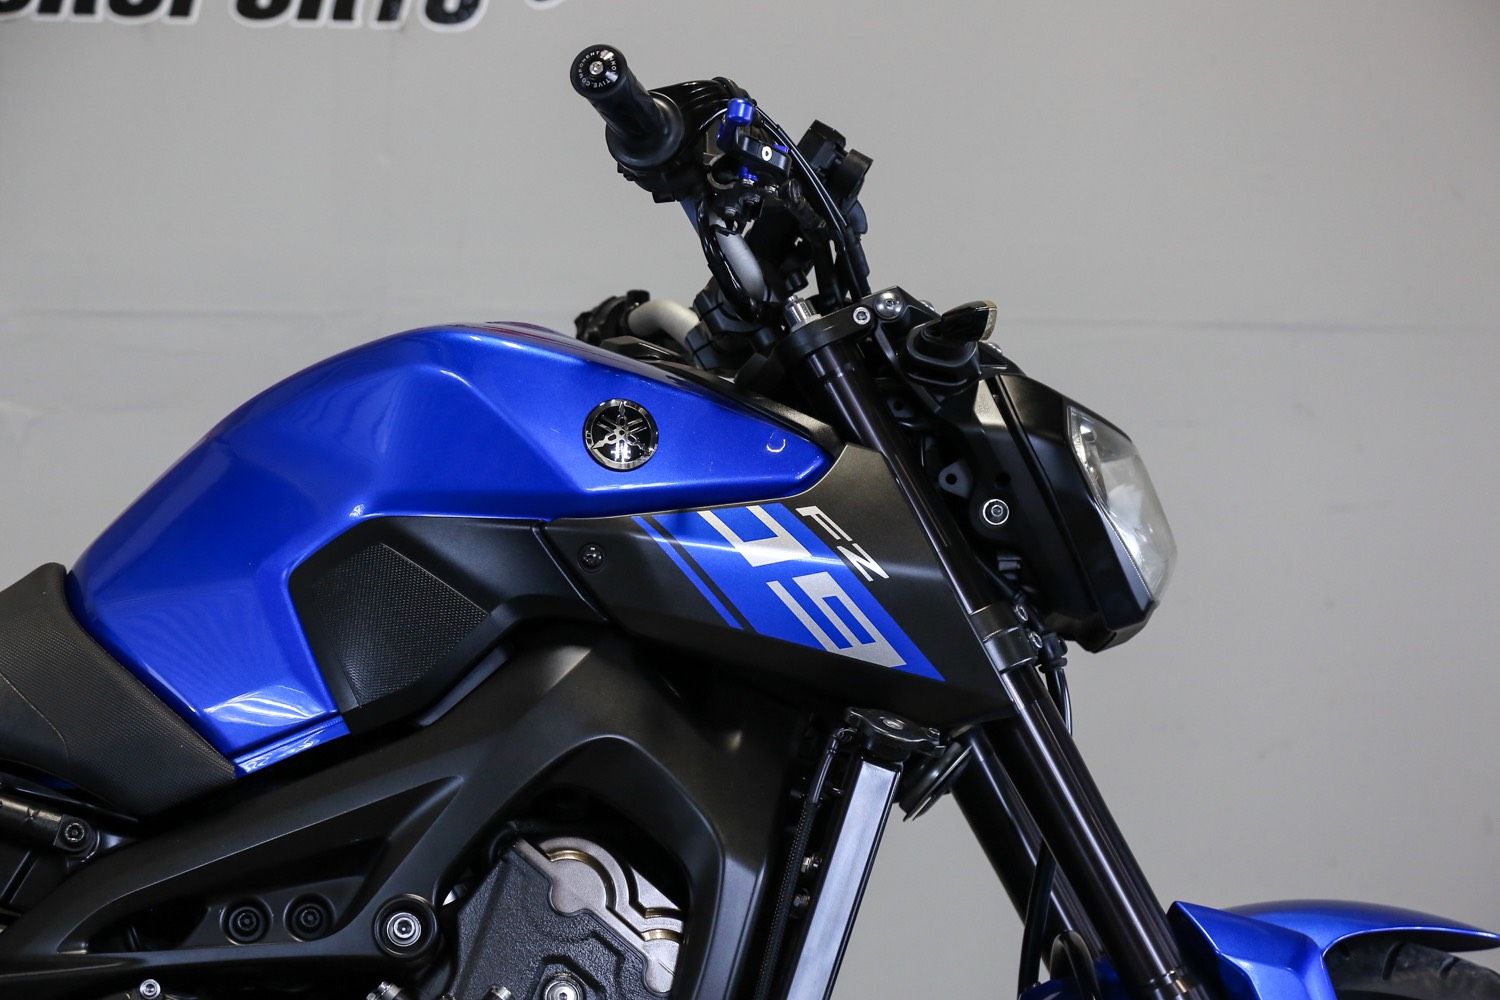 Naked-bike 150 cc, chọn Honda CB150R hay Yamaha MT-15 